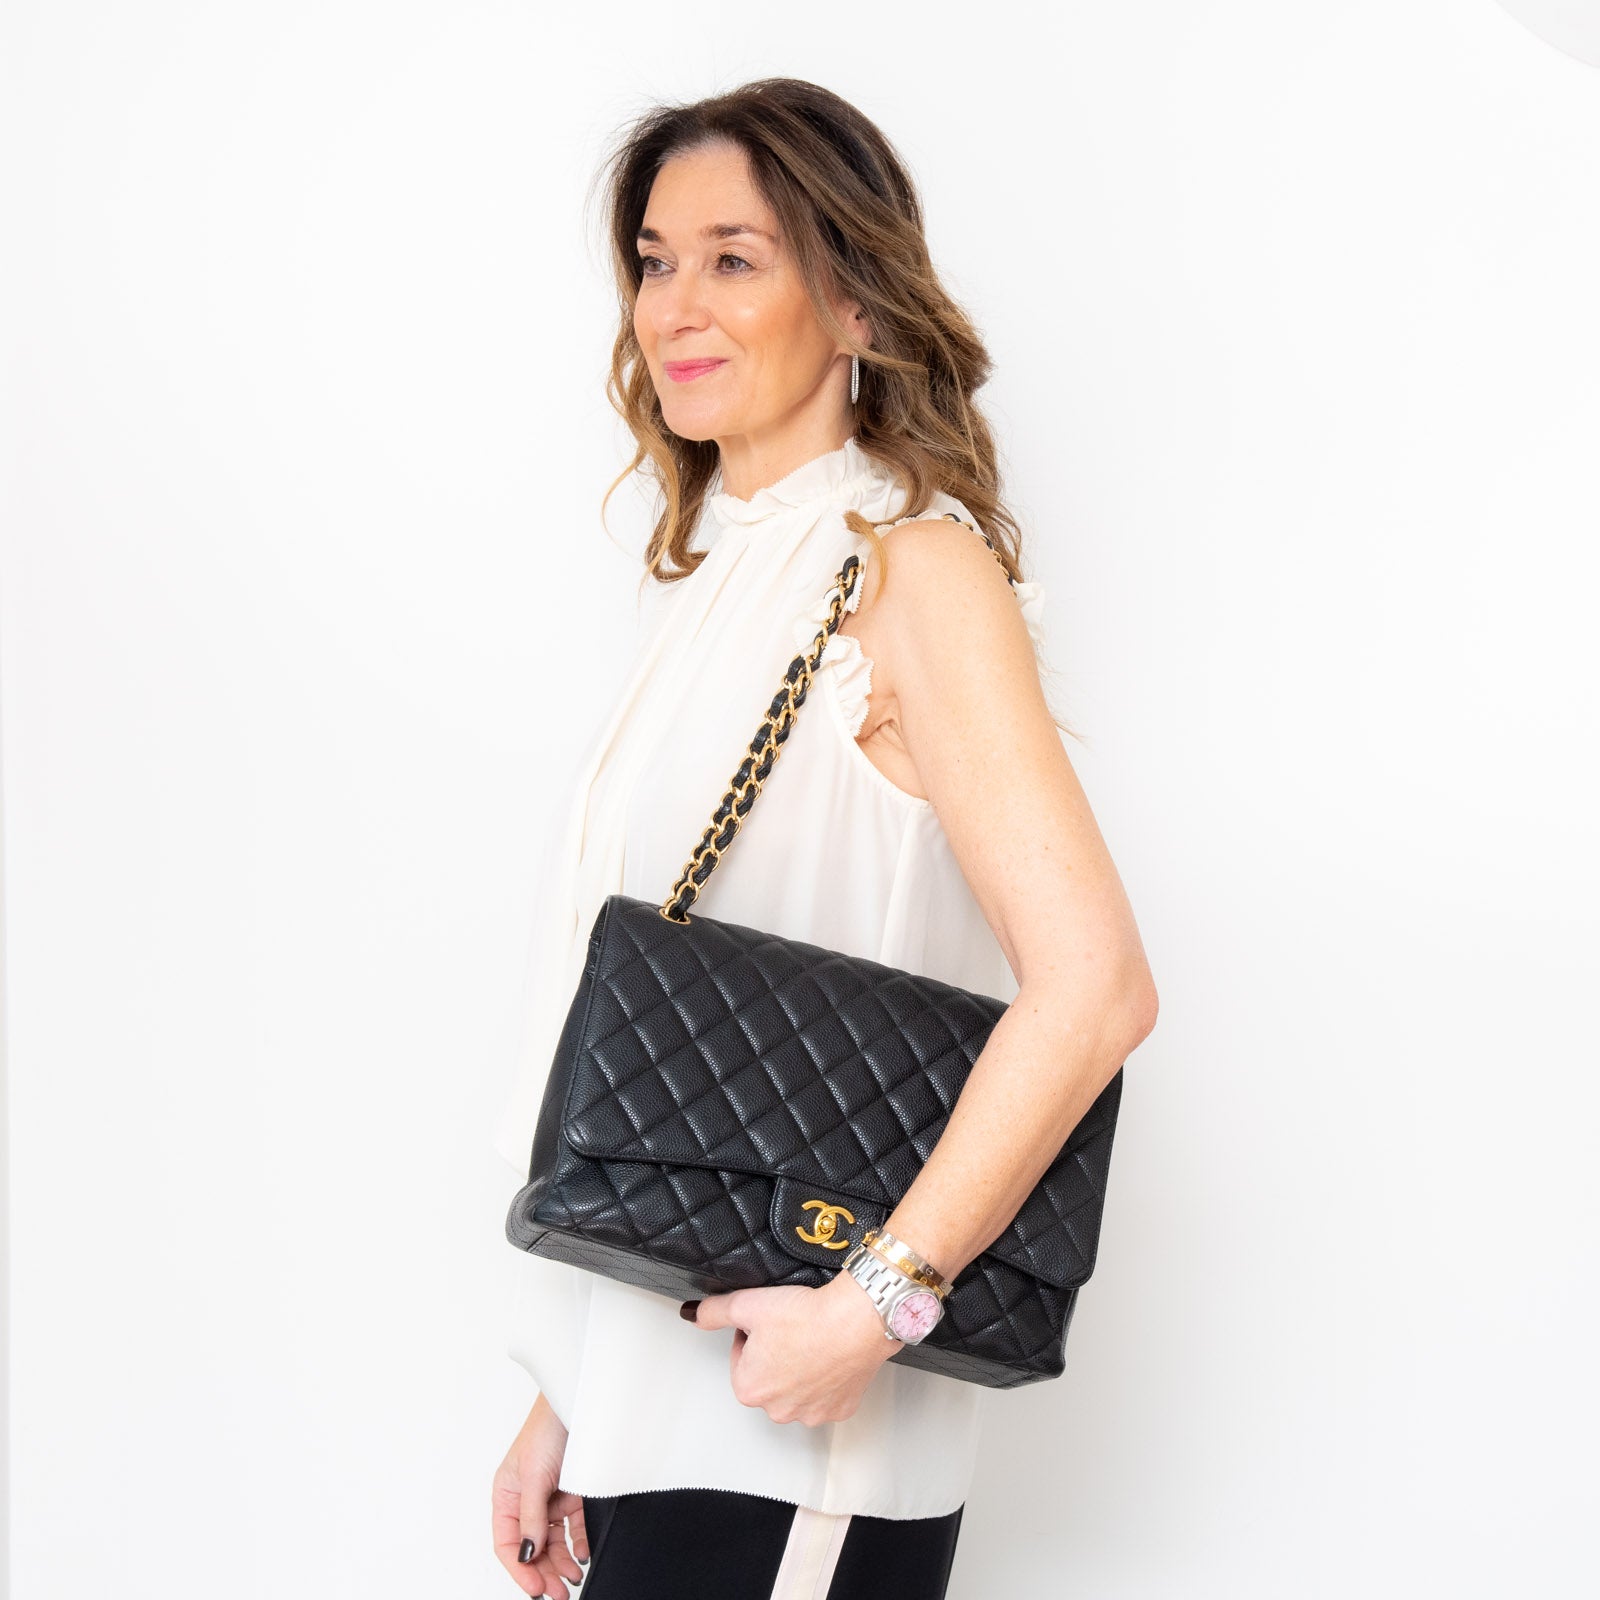 Chanel Classic Maxi Flap Bag